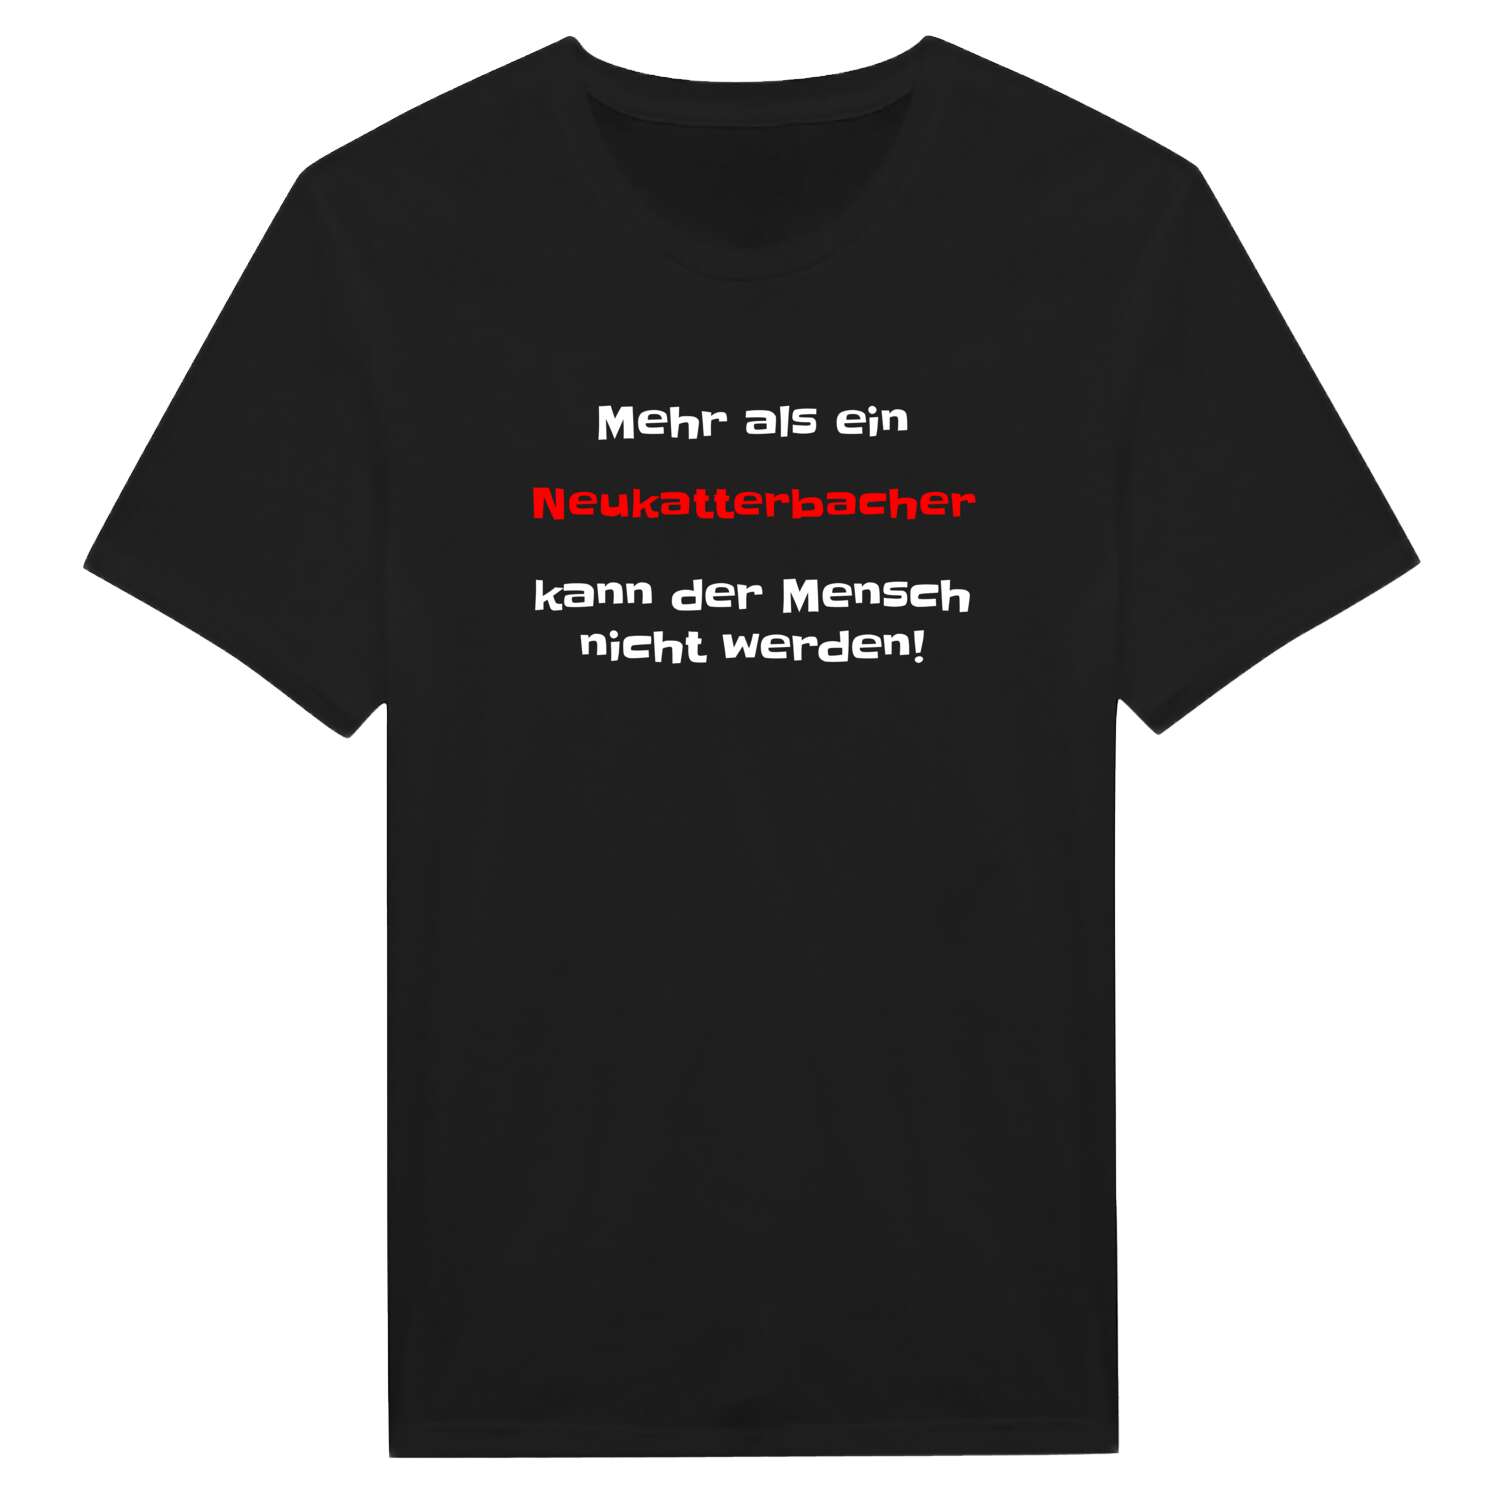 Neukatterbach T-Shirt »Mehr als ein«